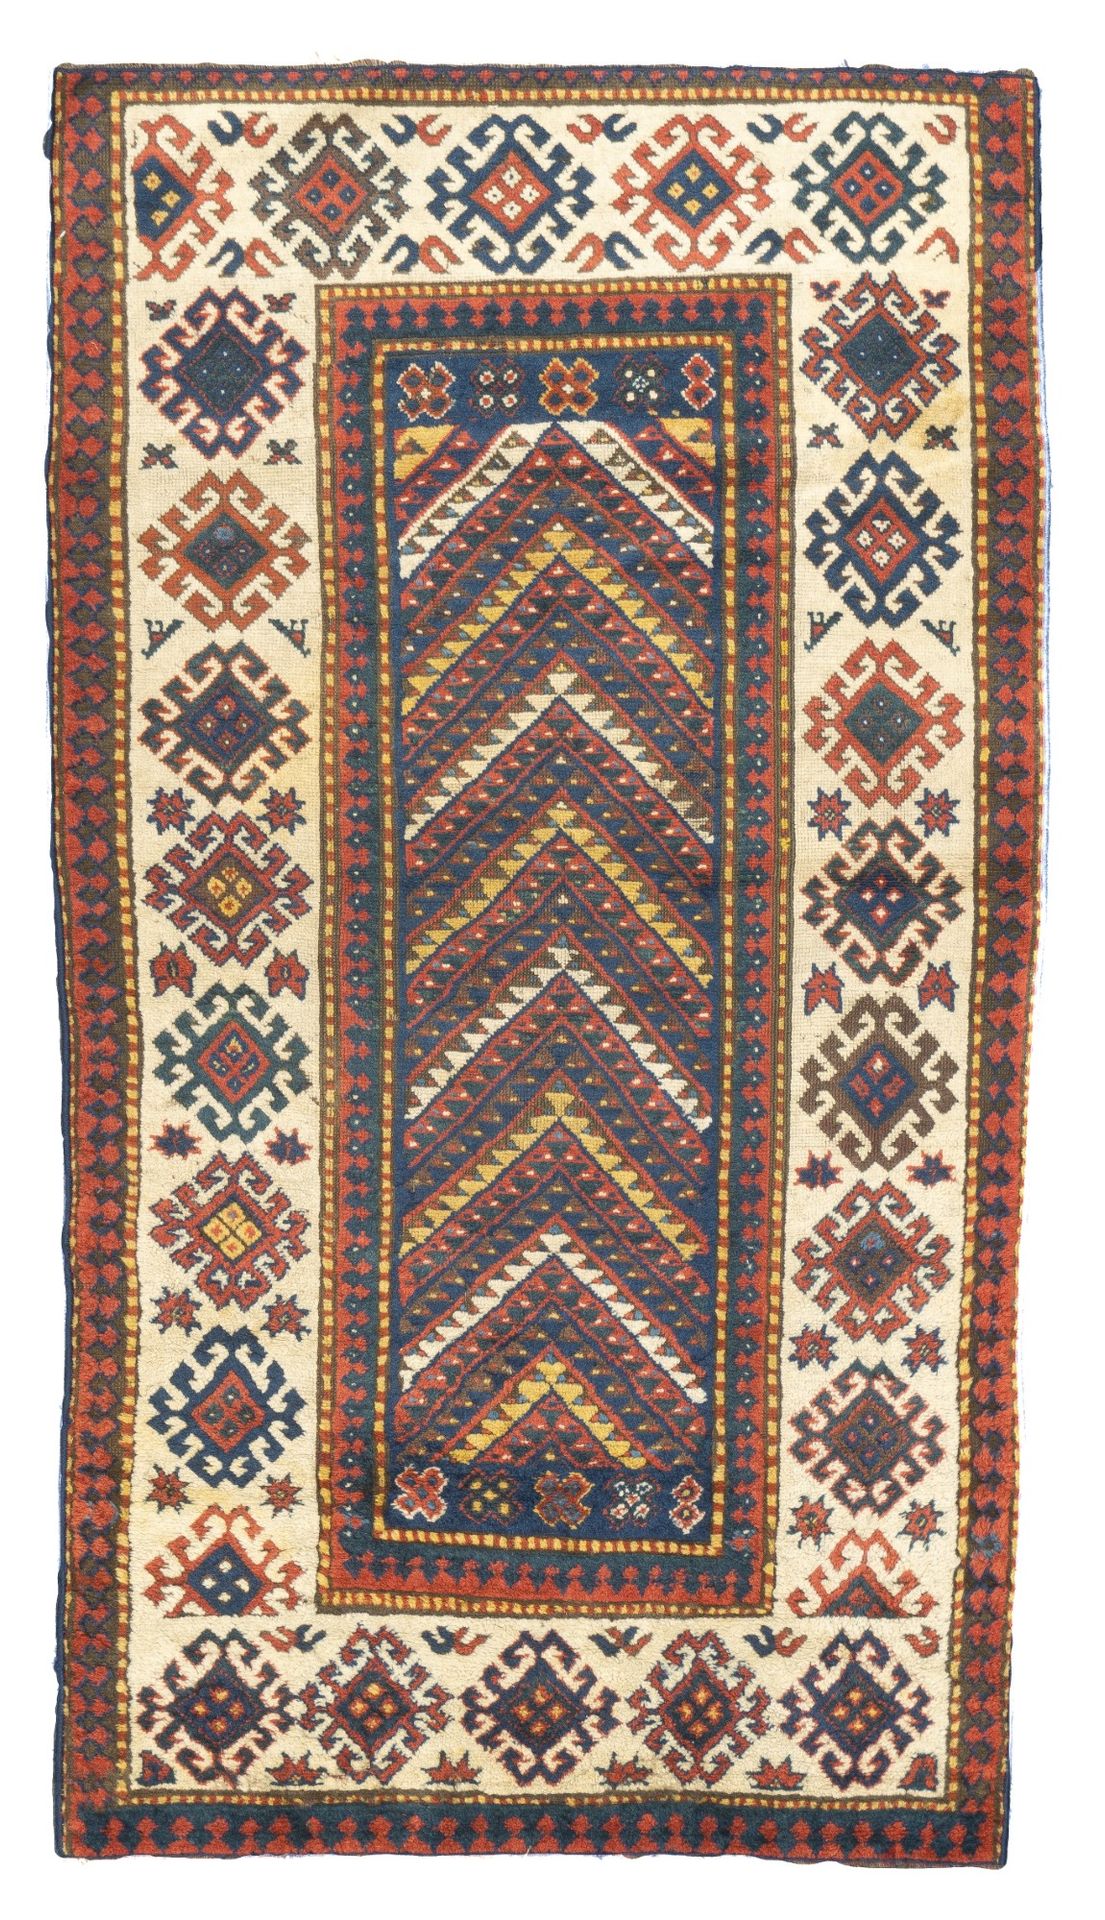 Null Antique Kazak Rug, 3'4" x 6'2" ( 1.02 x 1.88 M )